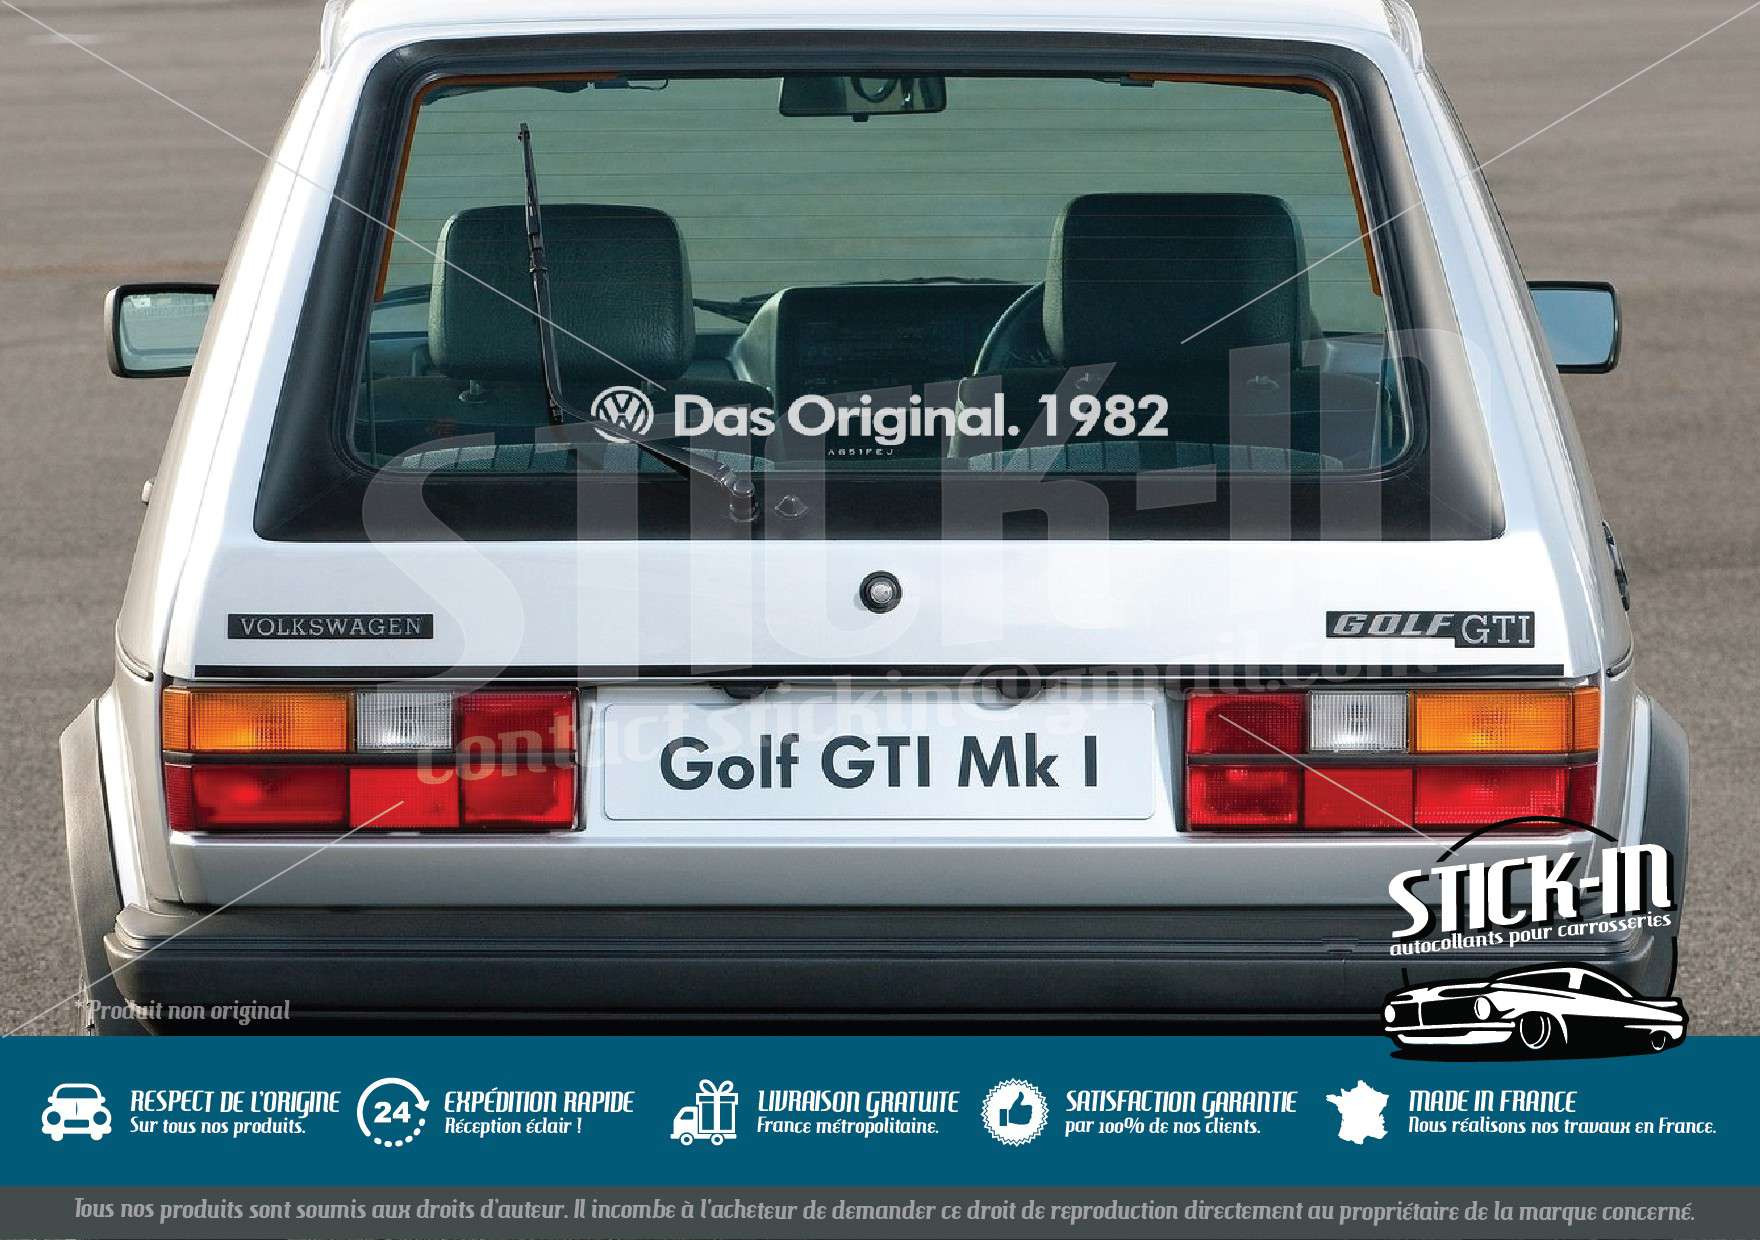 https://shop.stick-in.fr/504-thickbox_default/volkswagen-autocollants-das-original-annee-golf-gti.jpg